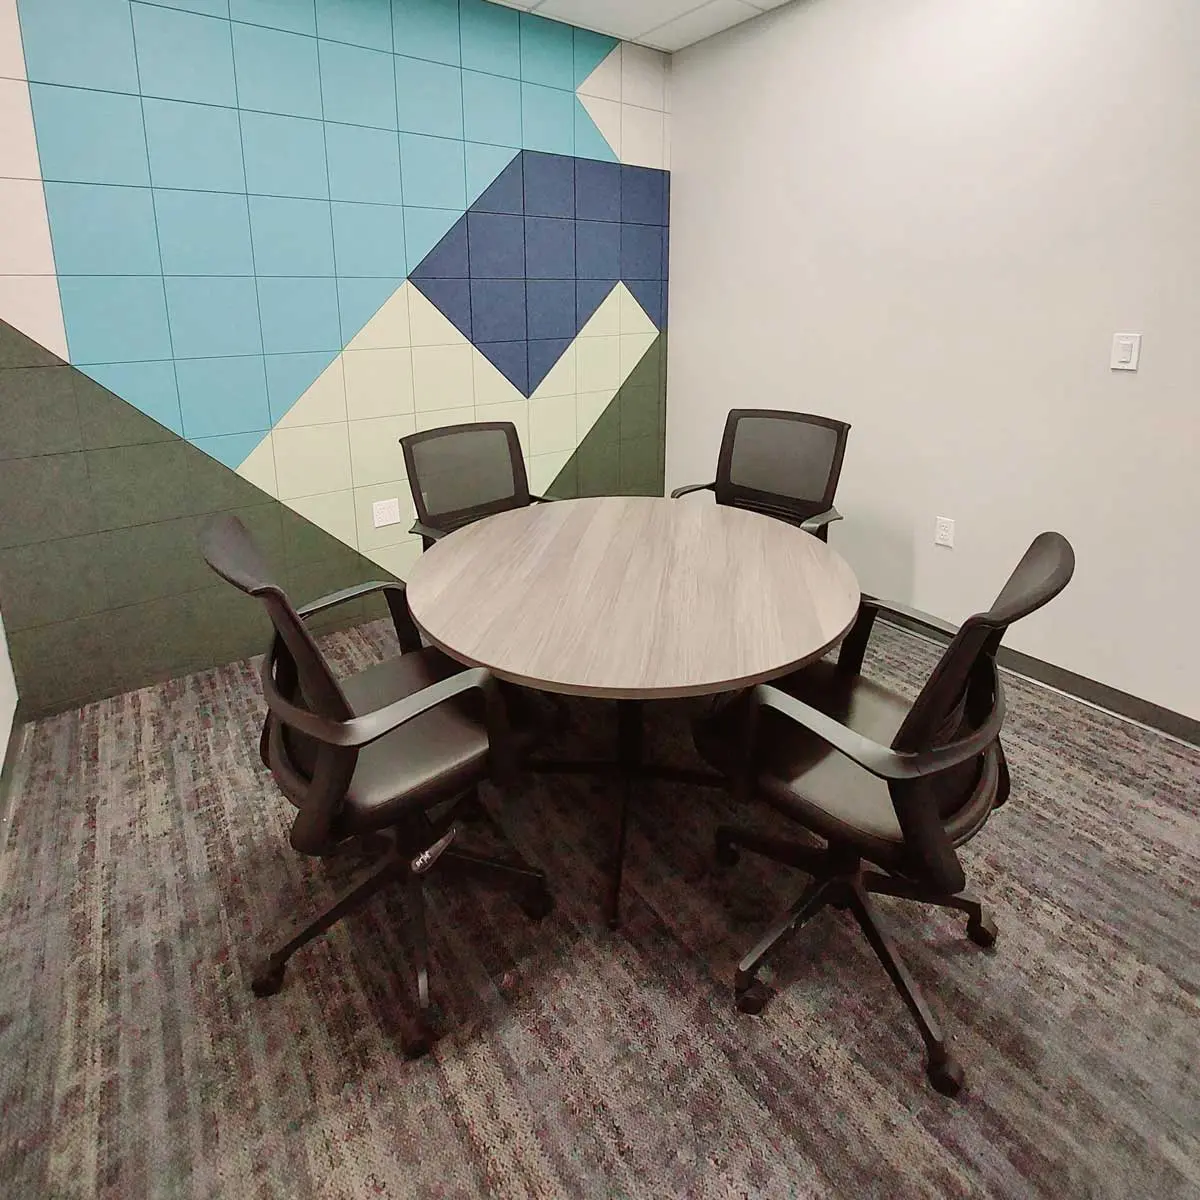 Reserve Co-Op Meeting Room